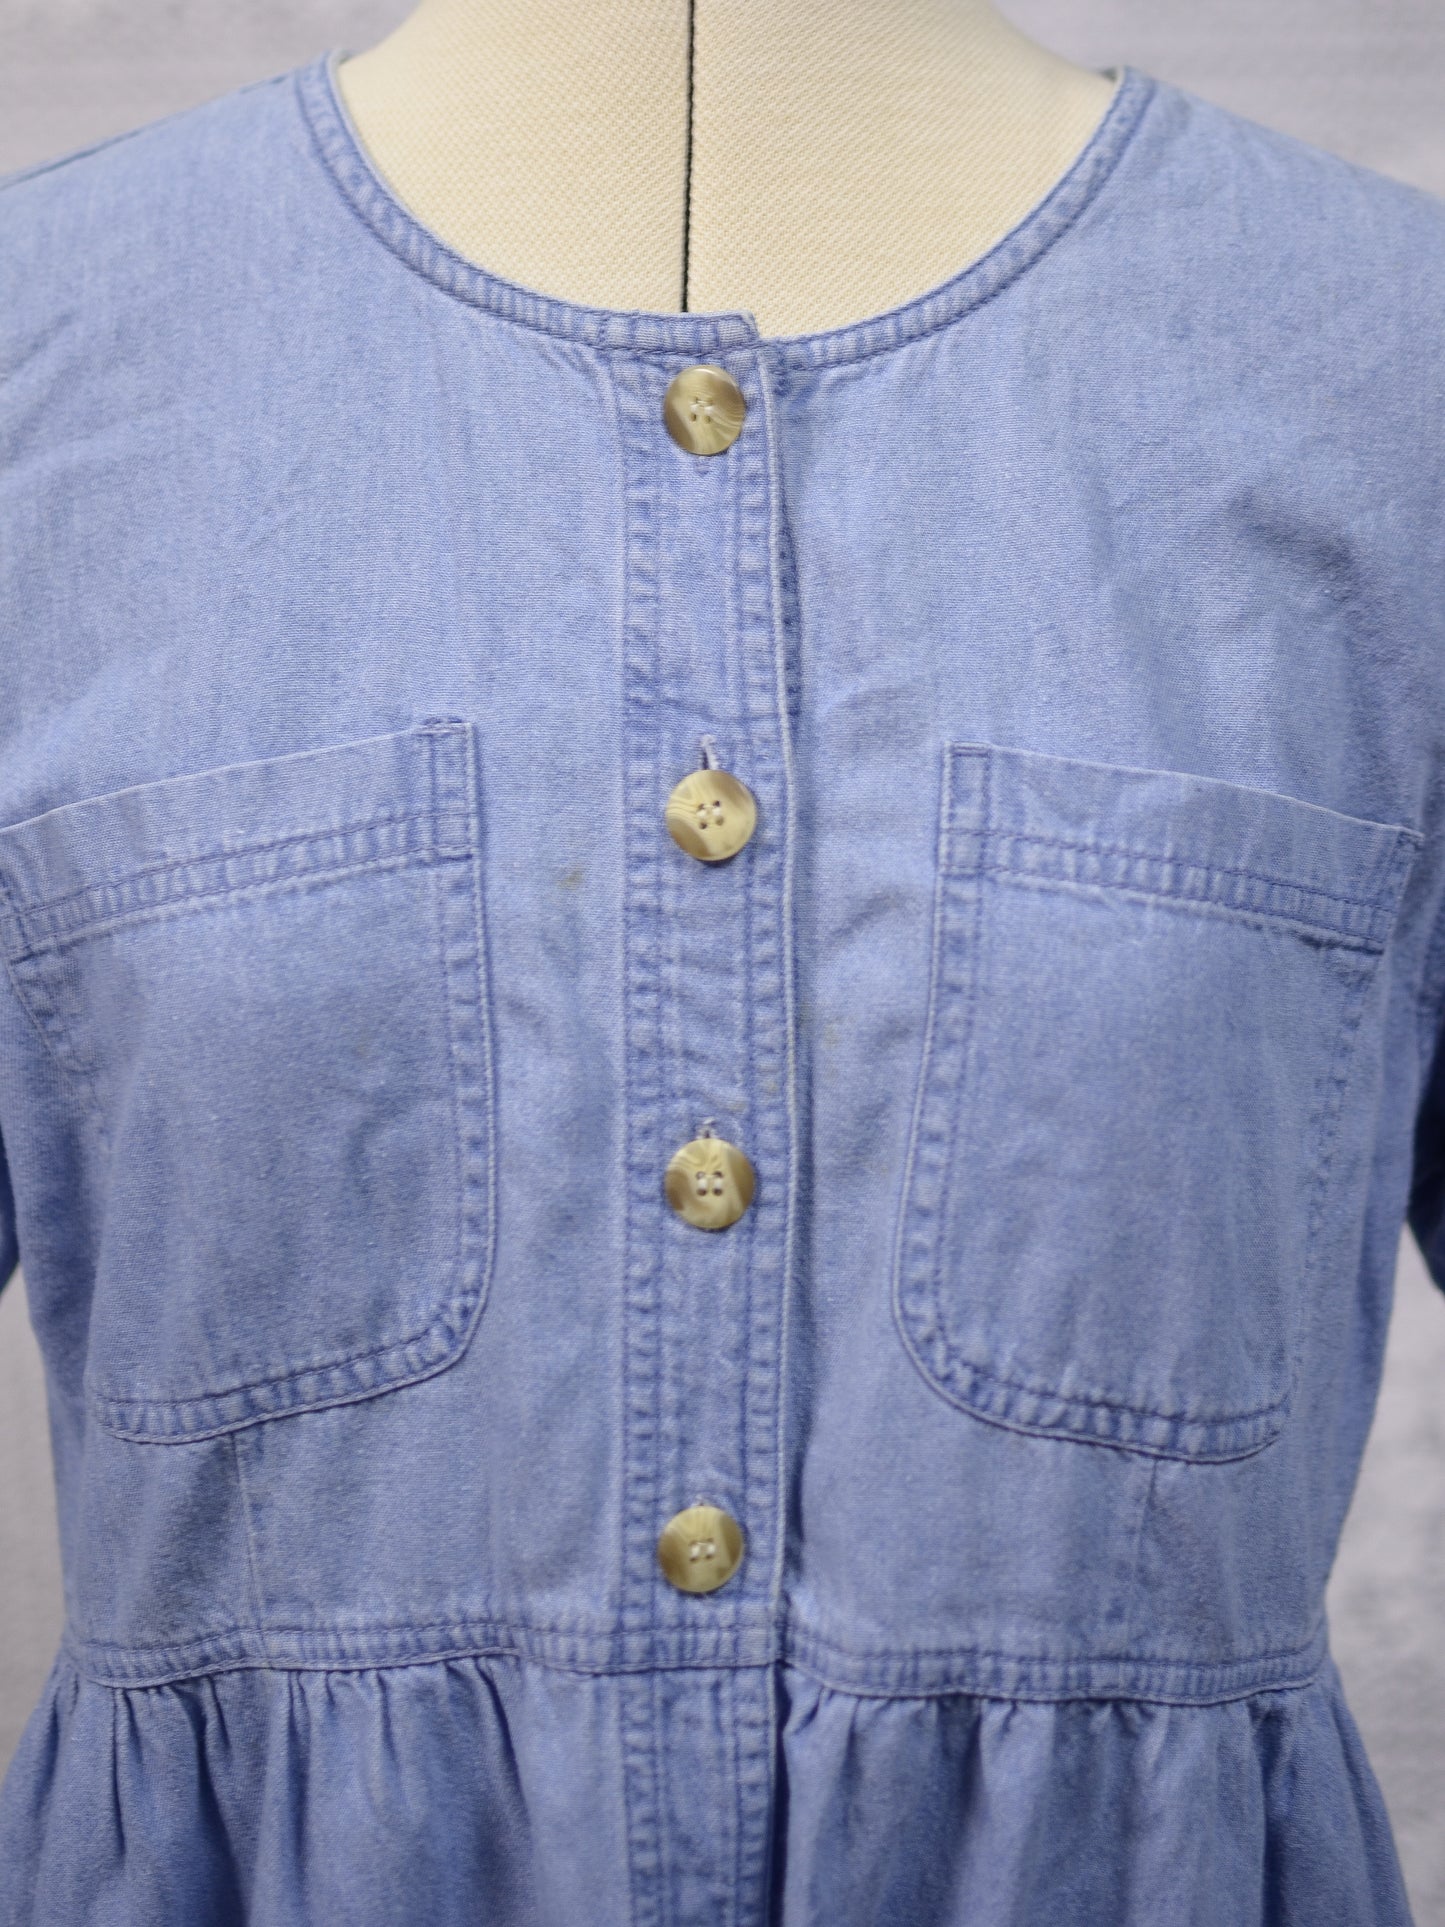 1990s light blue denim button through short sleeve maxi smock dress